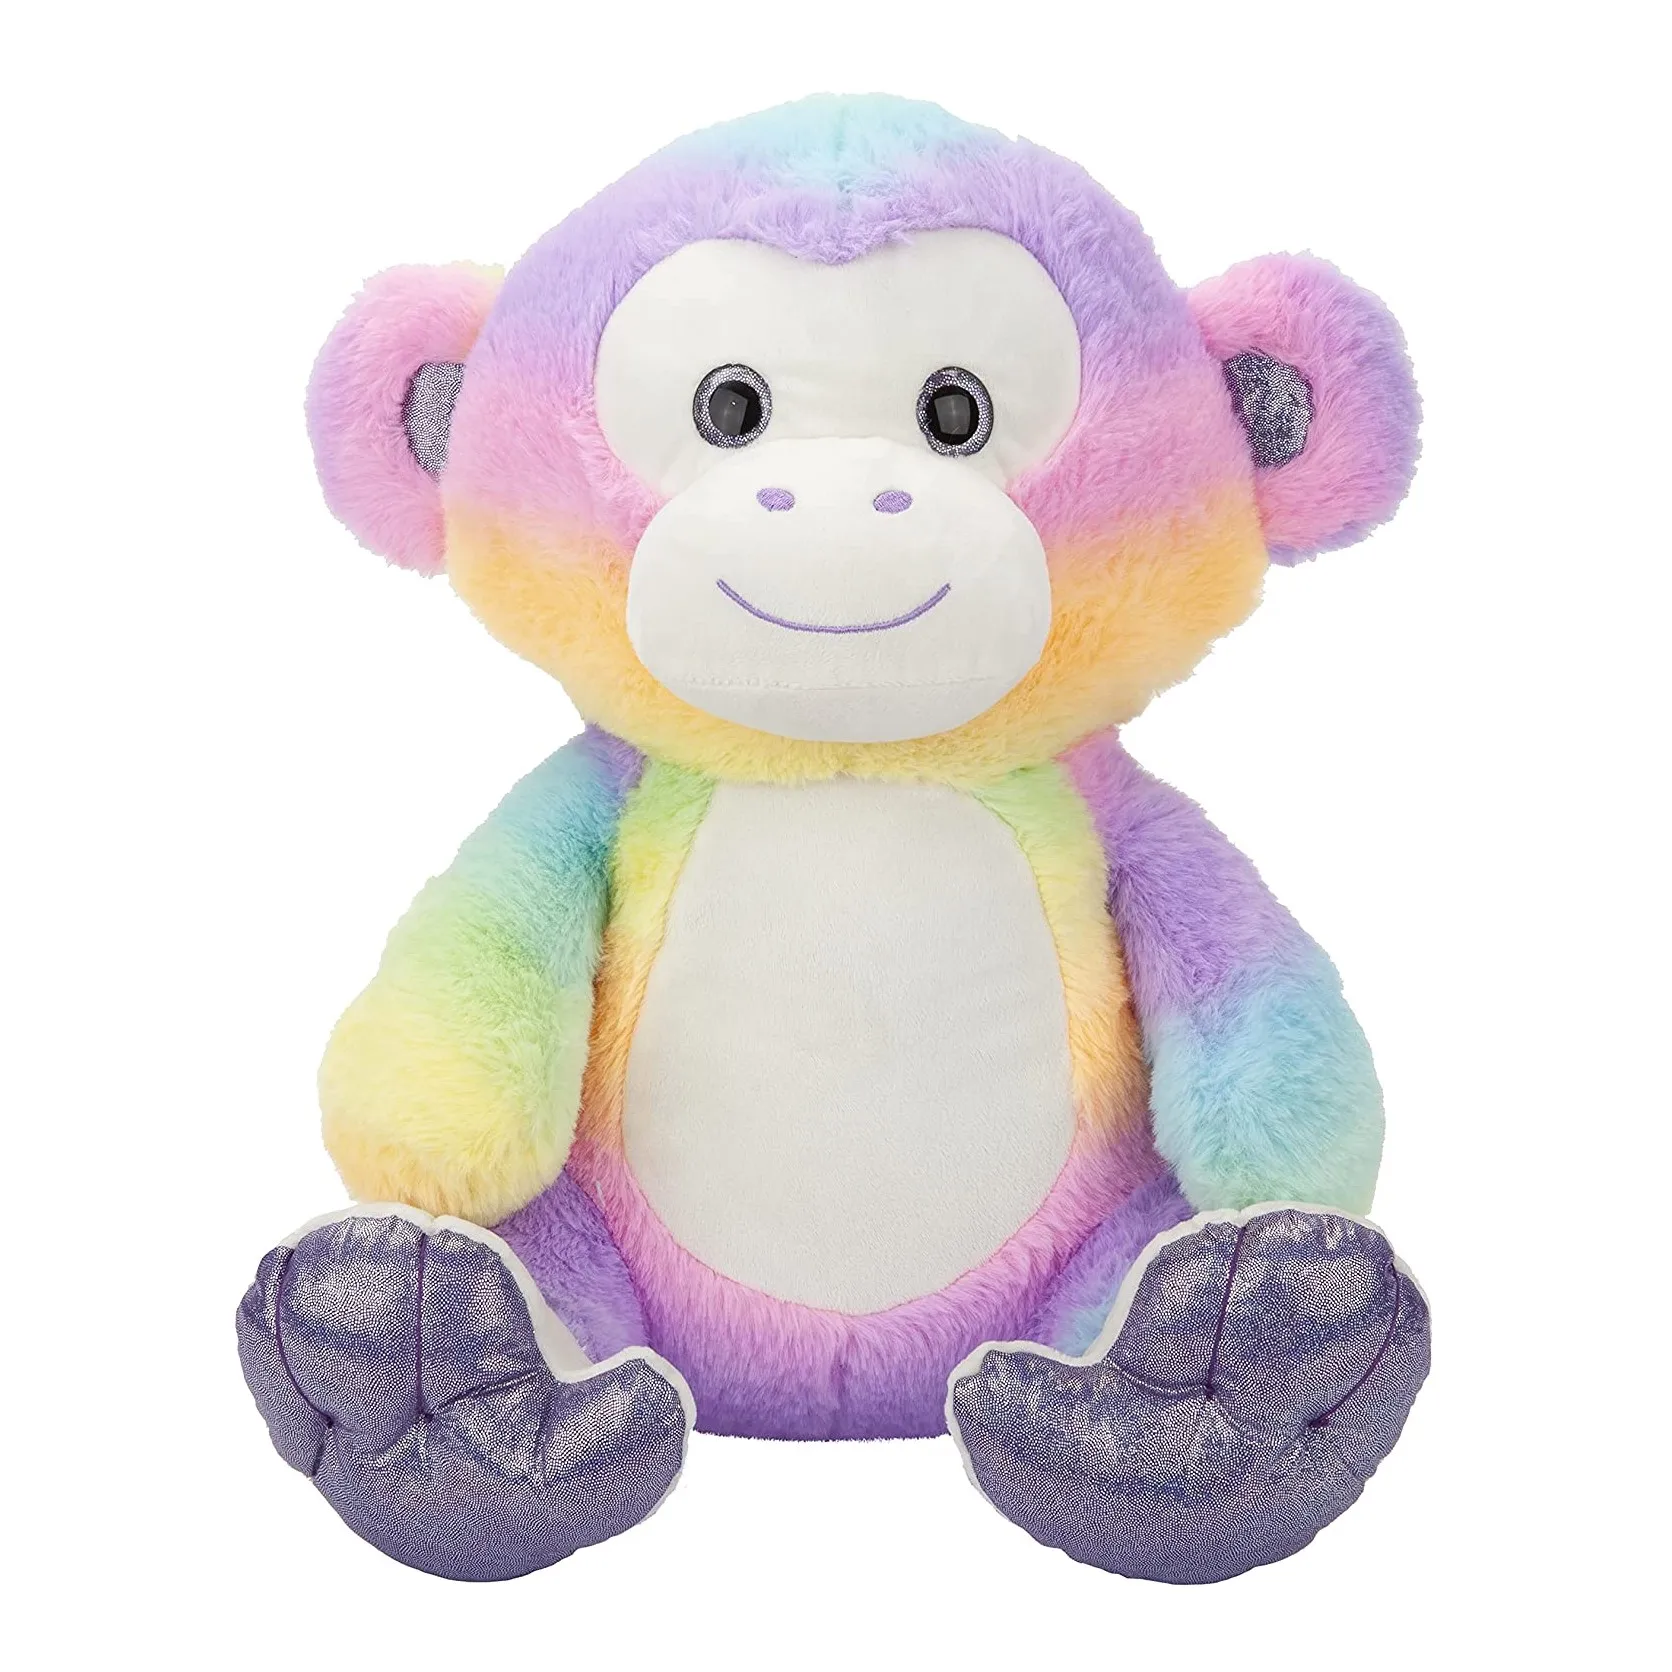 Luxury tie-dye super soft fabric elephant plush animal toy Cuddly stuffed soft animal toy wholesale OEM logo